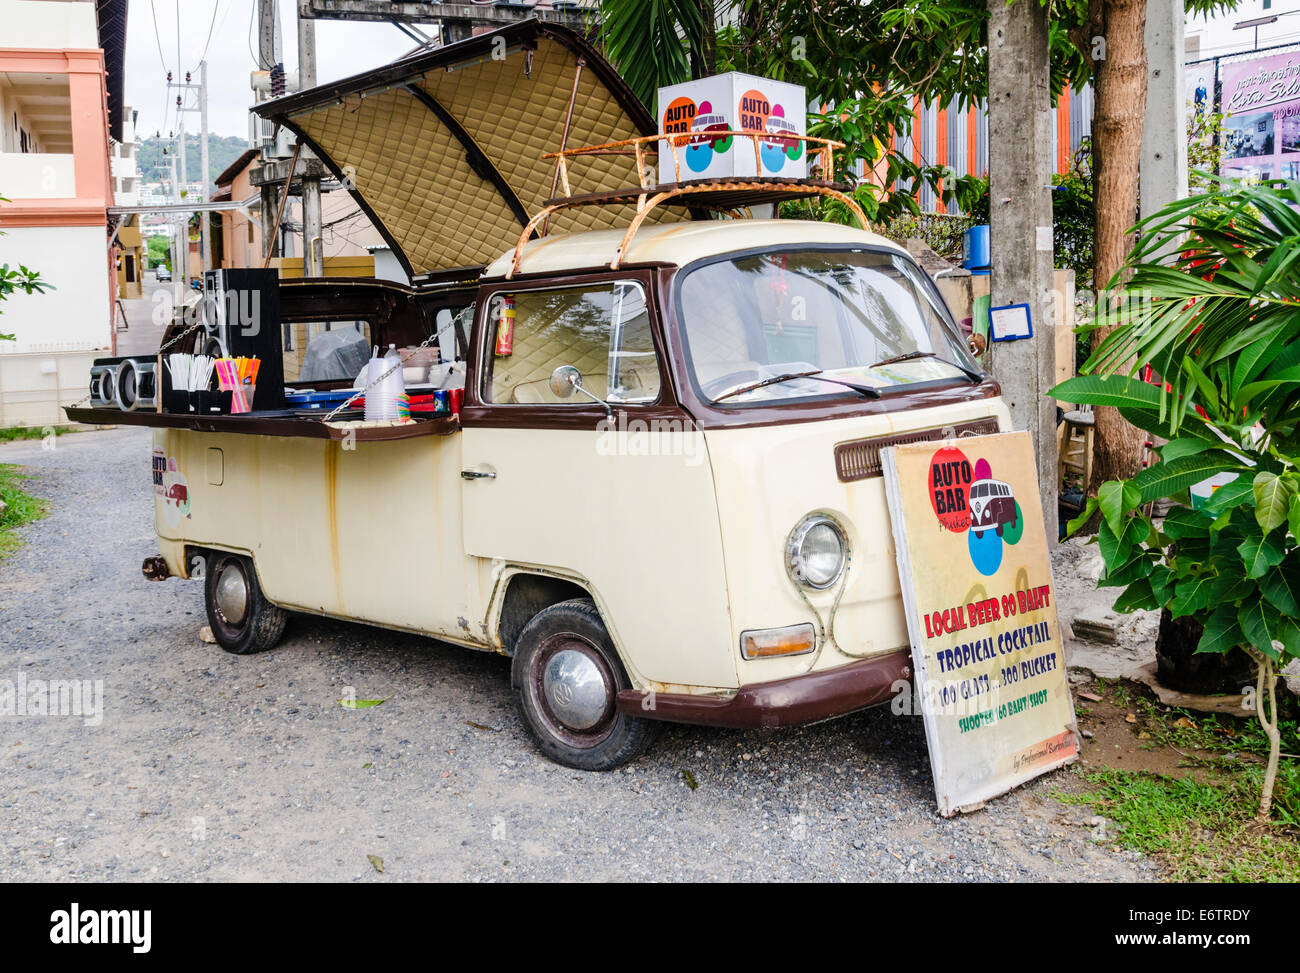 Pop-up mobile bar in a Volkswagen Kombi van, Kata, Thailand Stock Photo